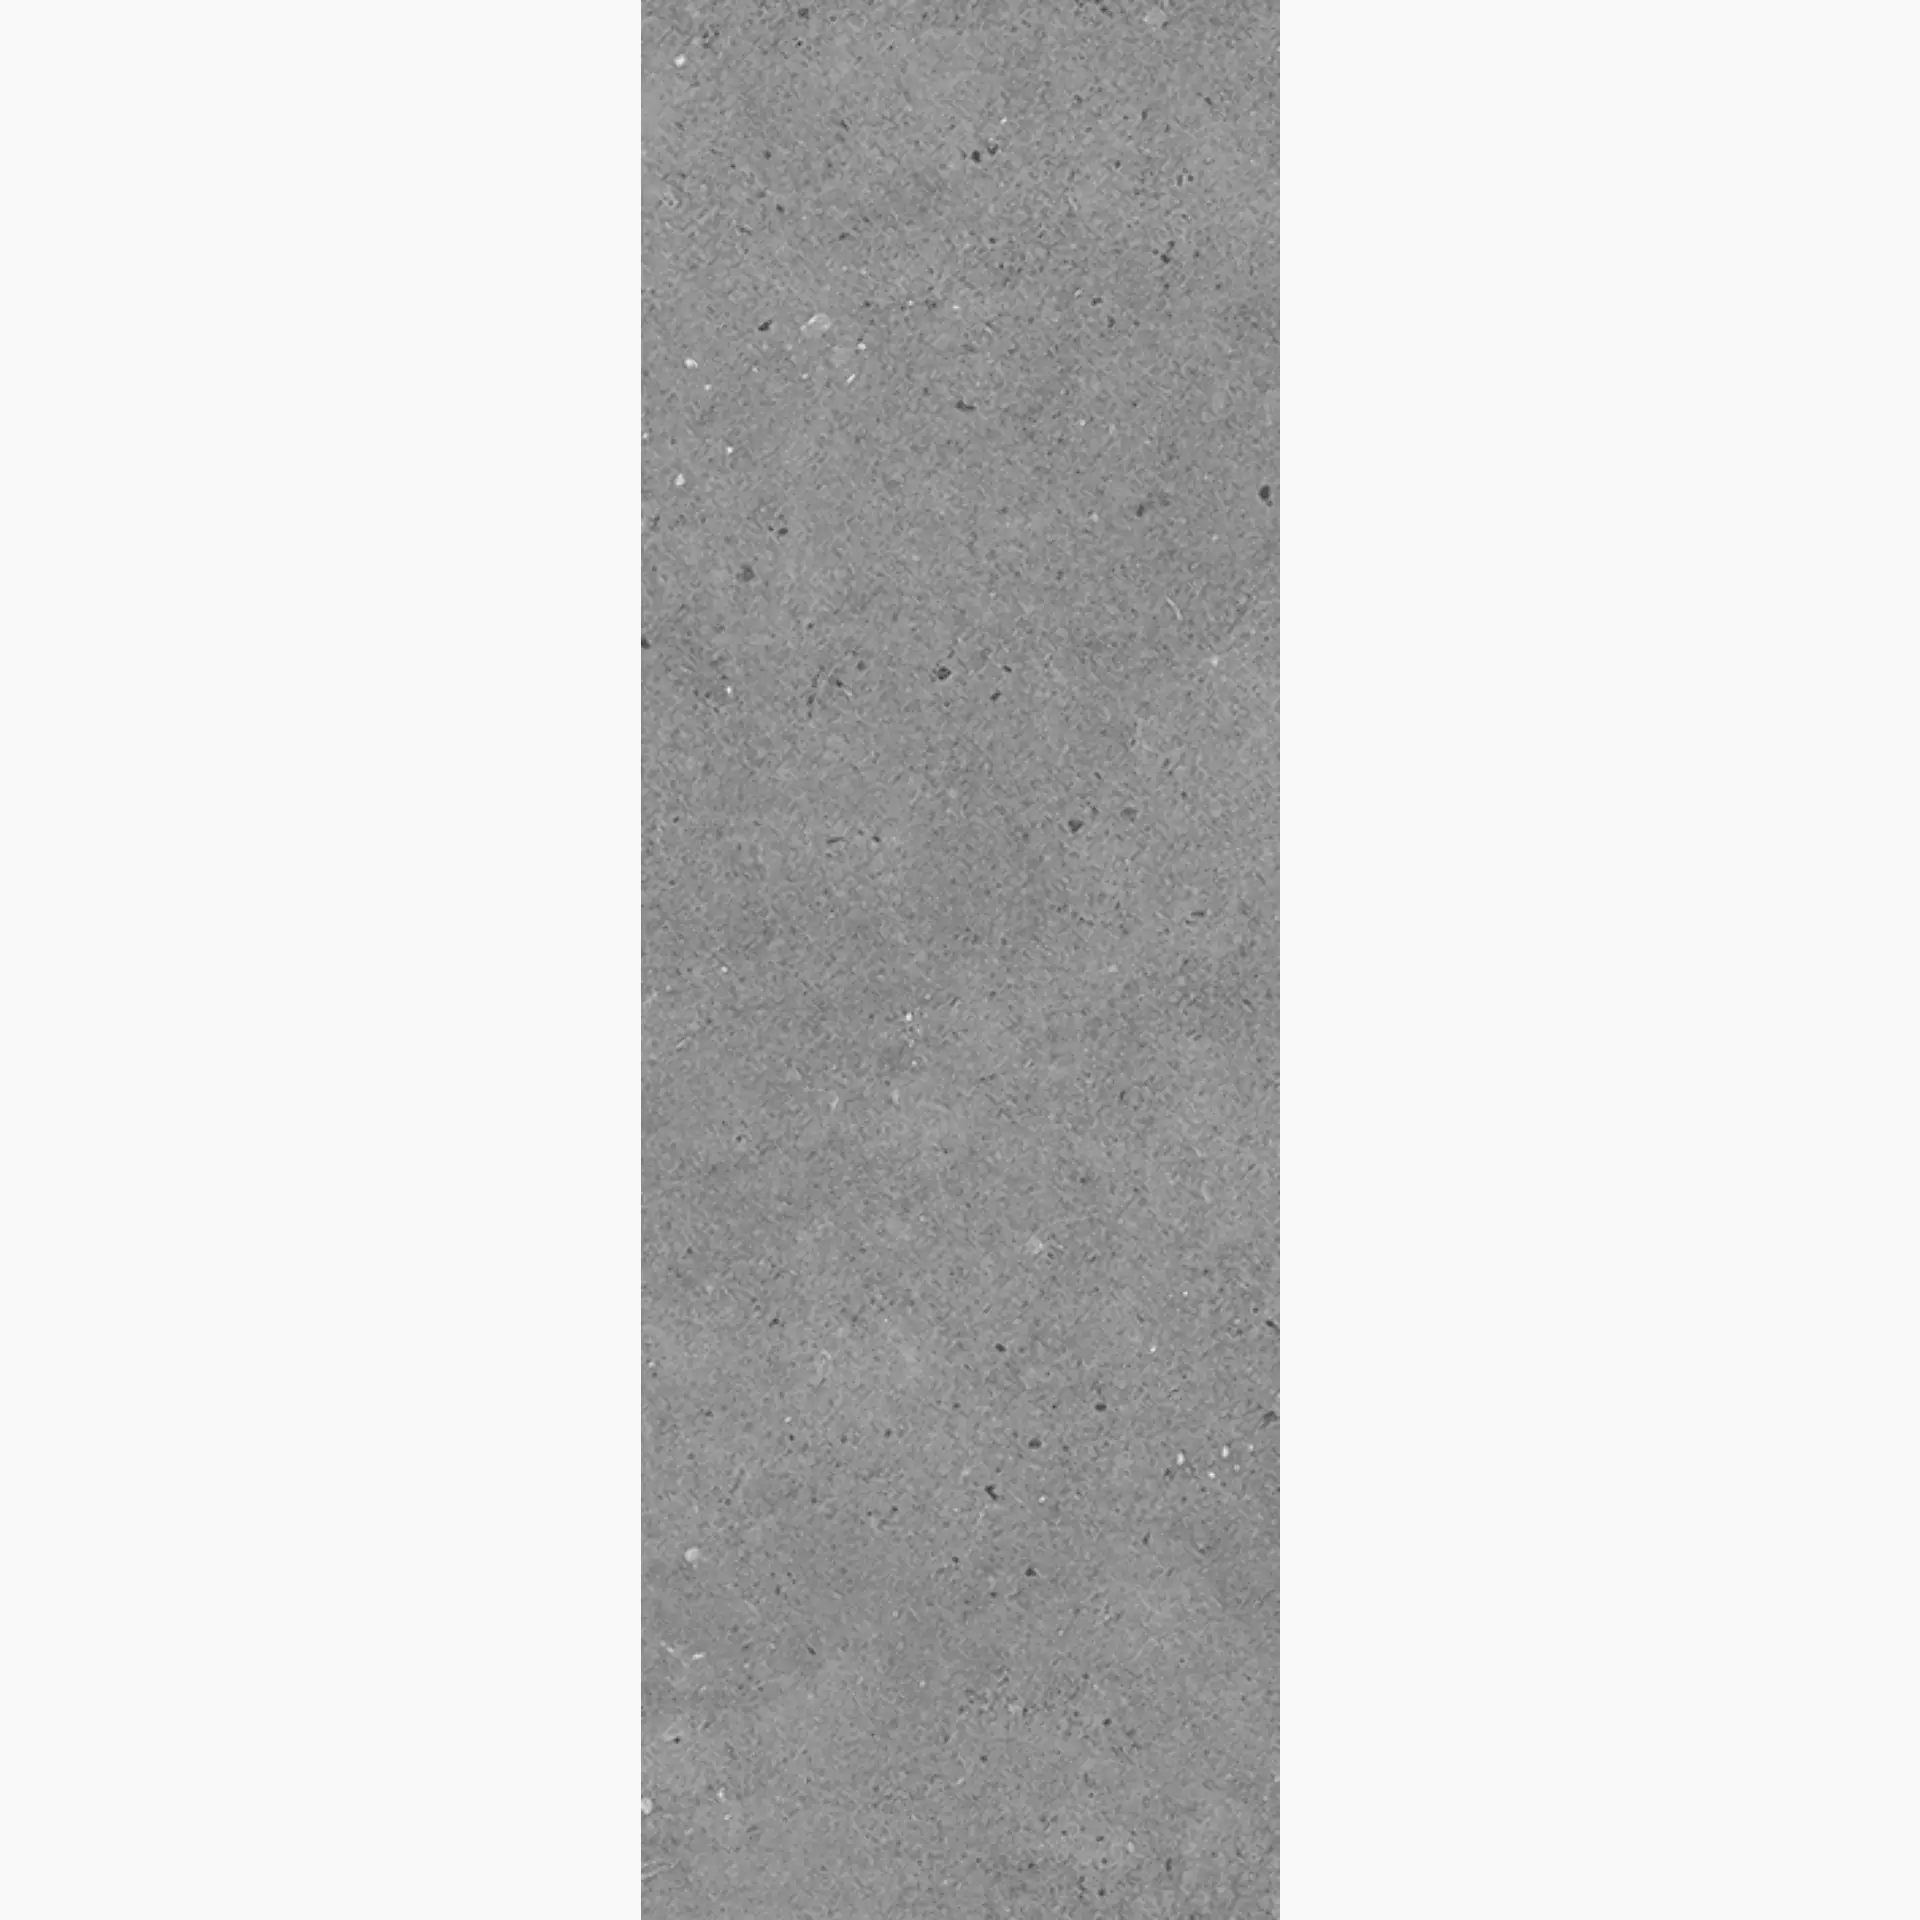 Villeroy & Boch Solid Tones Pure Concrete Matt 2621-PC61 20x60cm rectified 10mm